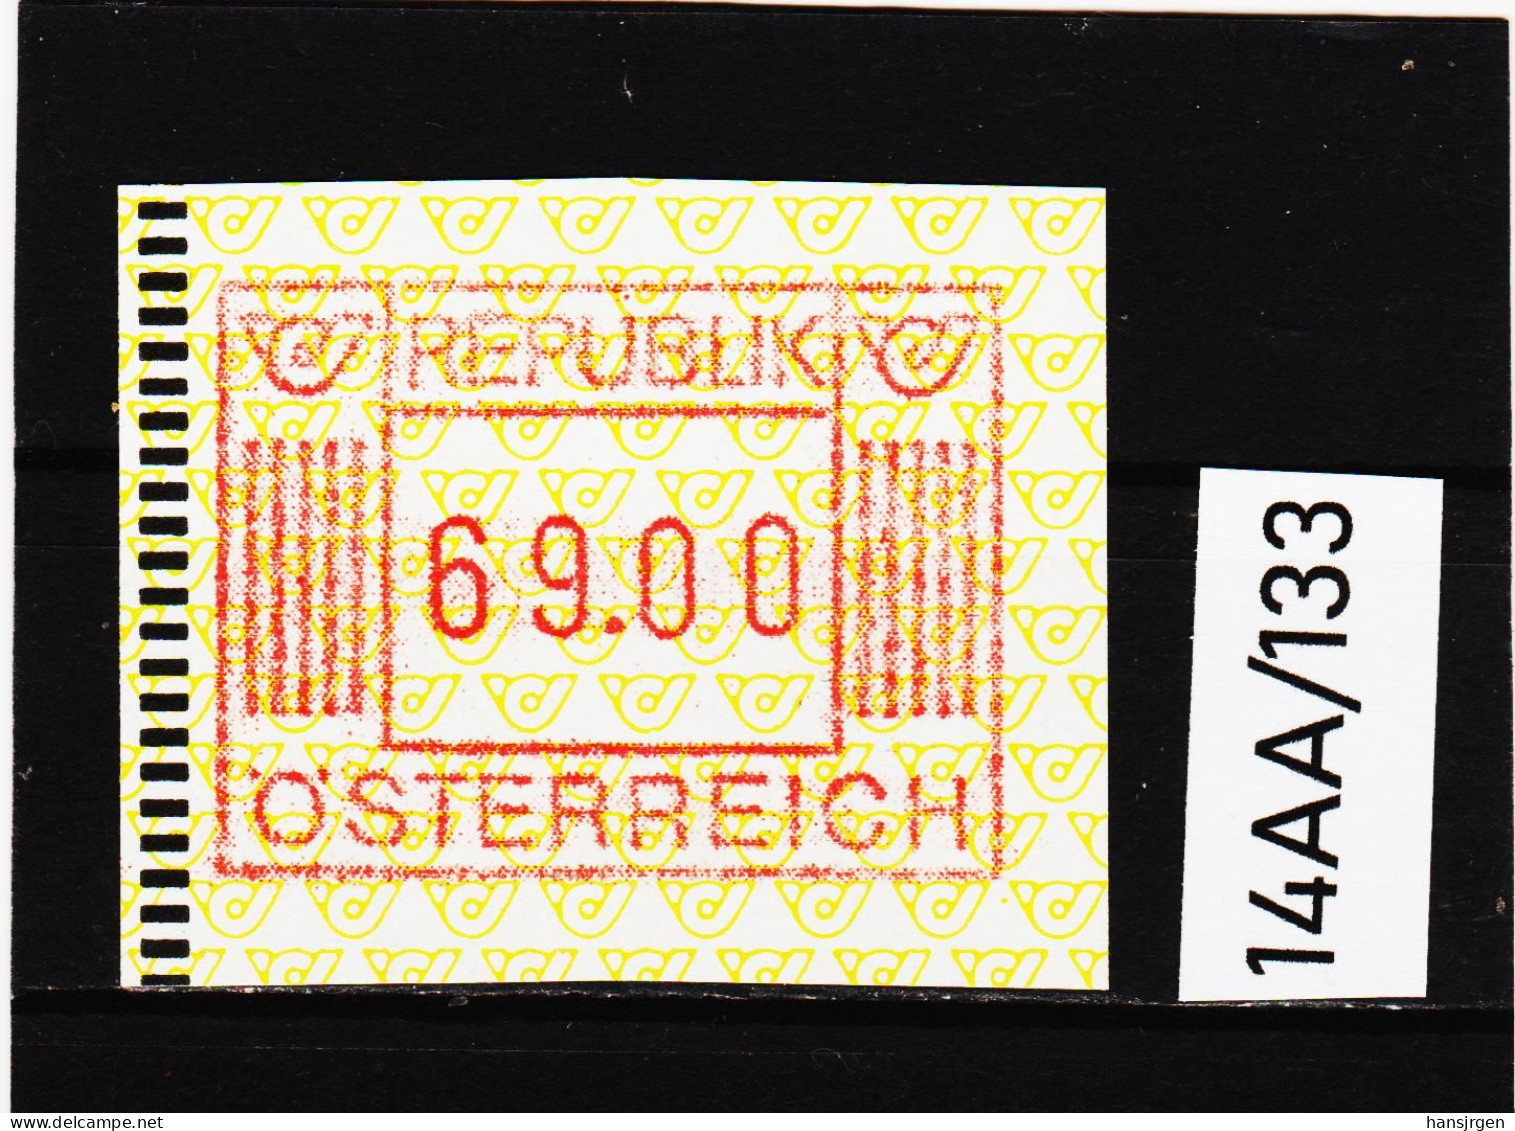 14AA/133  ÖSTERREICH 1983 AUTOMATENMARKEN  A N K  1. AUSGABE  69,00 SCHILLING   ** Postfrisch - Machine Labels [ATM]